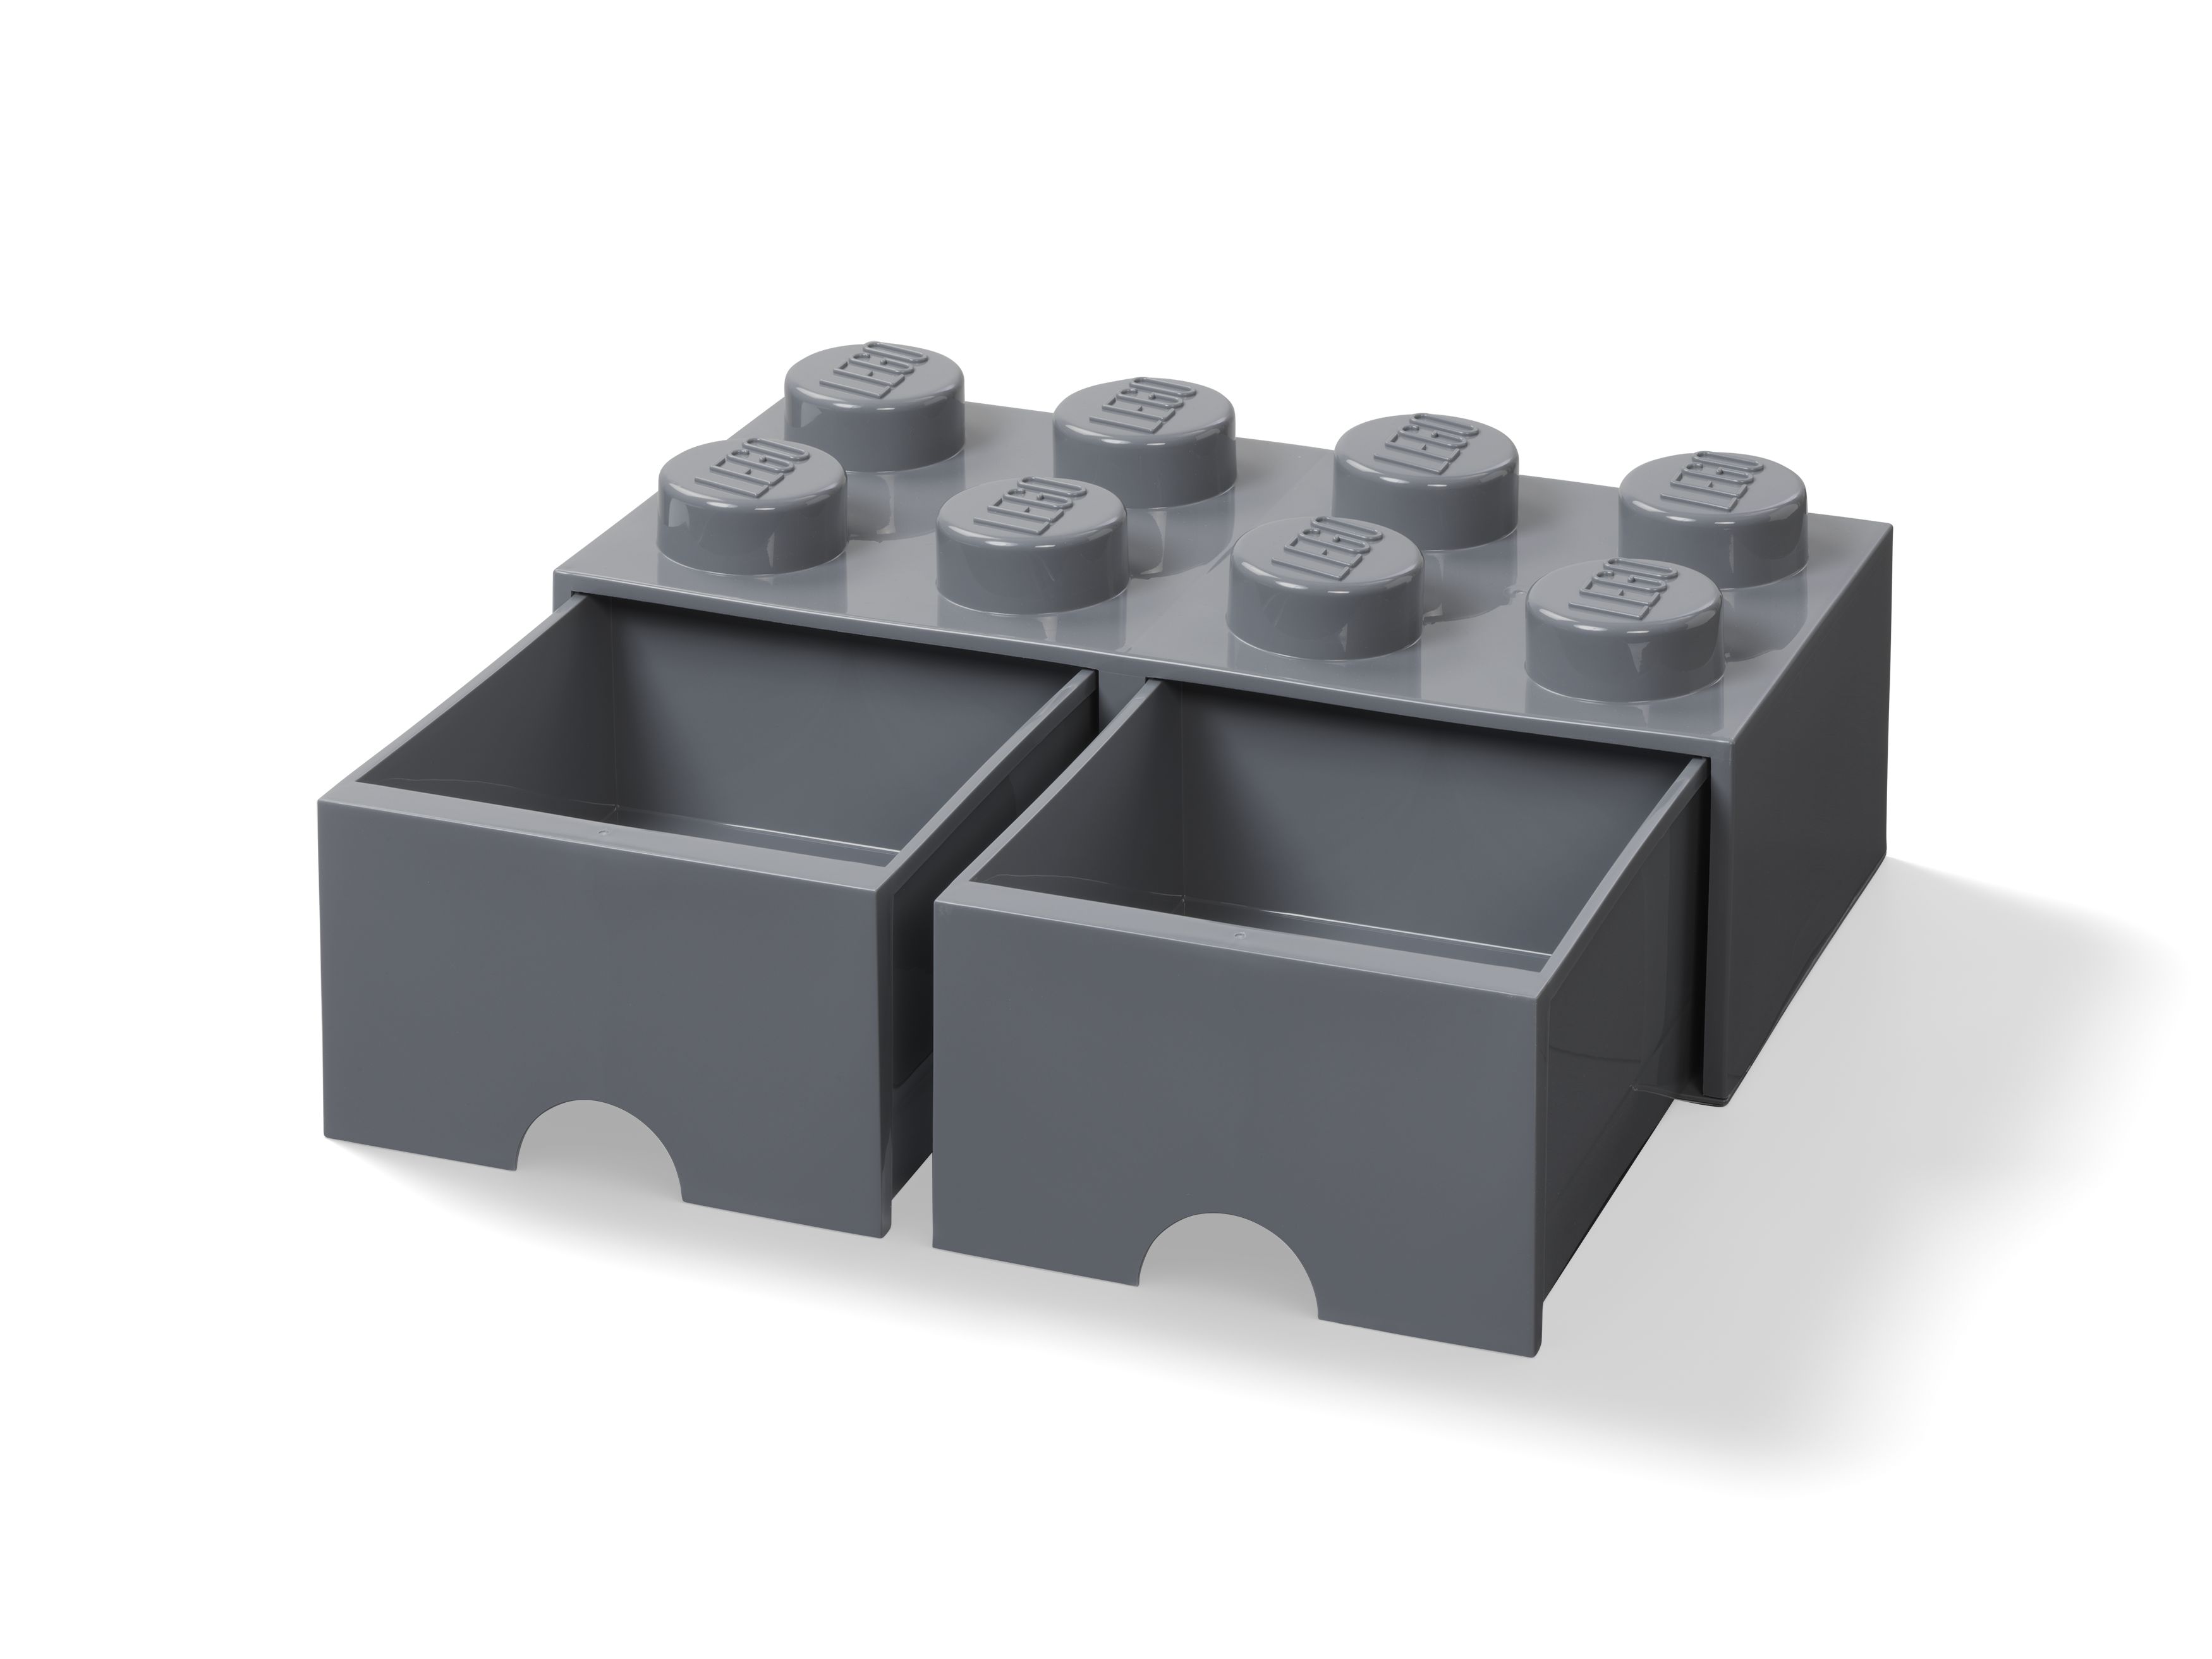 LEGO Gear 5006329 Aufbewahrungsstein mit Schubfächern in Dunkelgrau LEGO_5006329_alt2.jpg